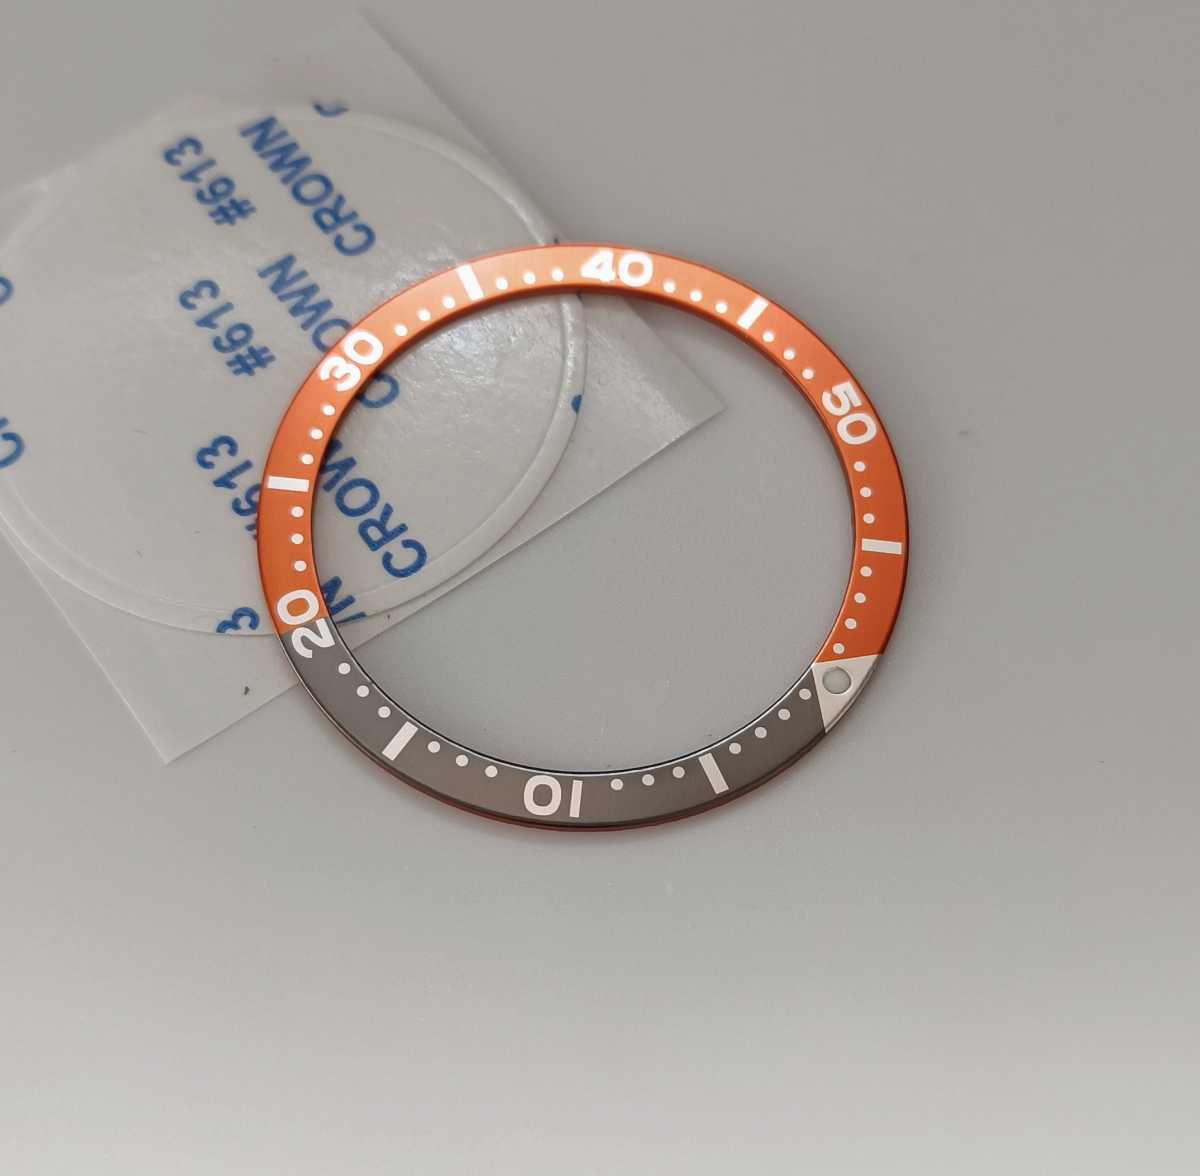  наручные часы ремонт для замены фирма внешний товар aluminium оправа вставка серый × orange [ соответствует ] Seiko SKX007/009 SRPD и т.п. SEIKO